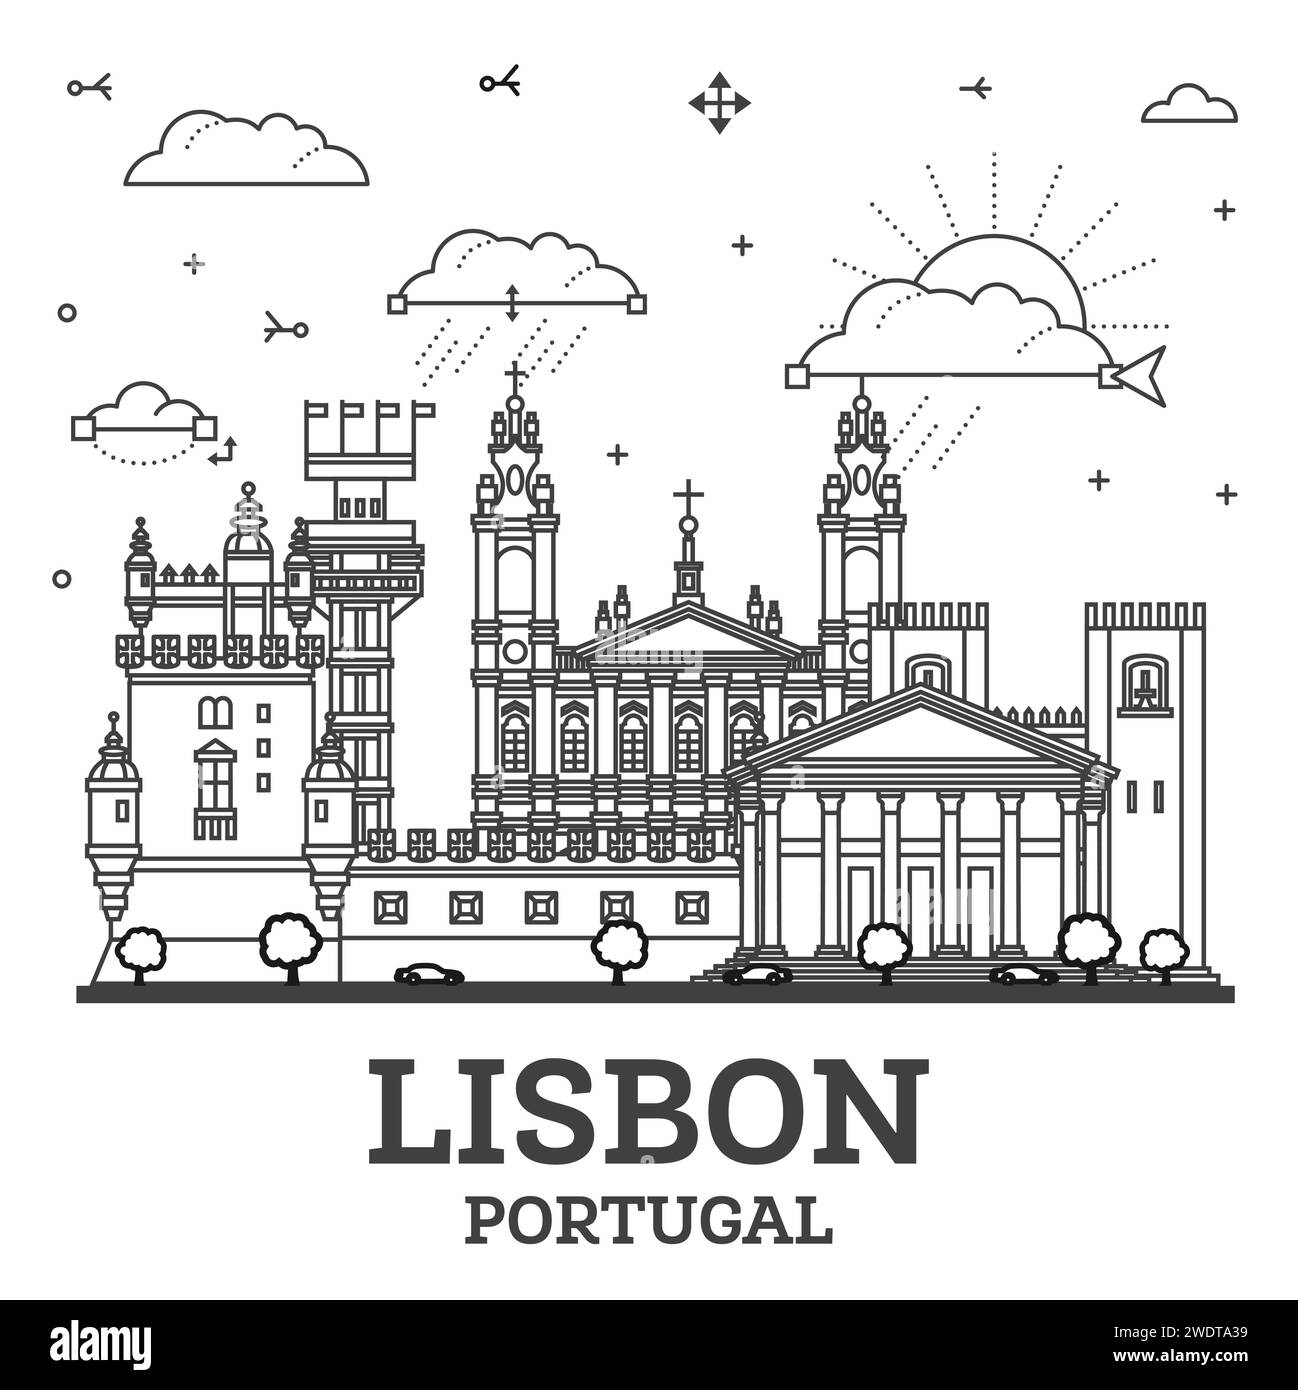 Umreißen Sie die Skyline der Stadt Lissabon Portugal mit modernen und historischen Gebäuden, die auf weiß isoliert sind. Vektorabbildung. Lissabons Stadtbild mit Wahrzeichen. Stock Vektor